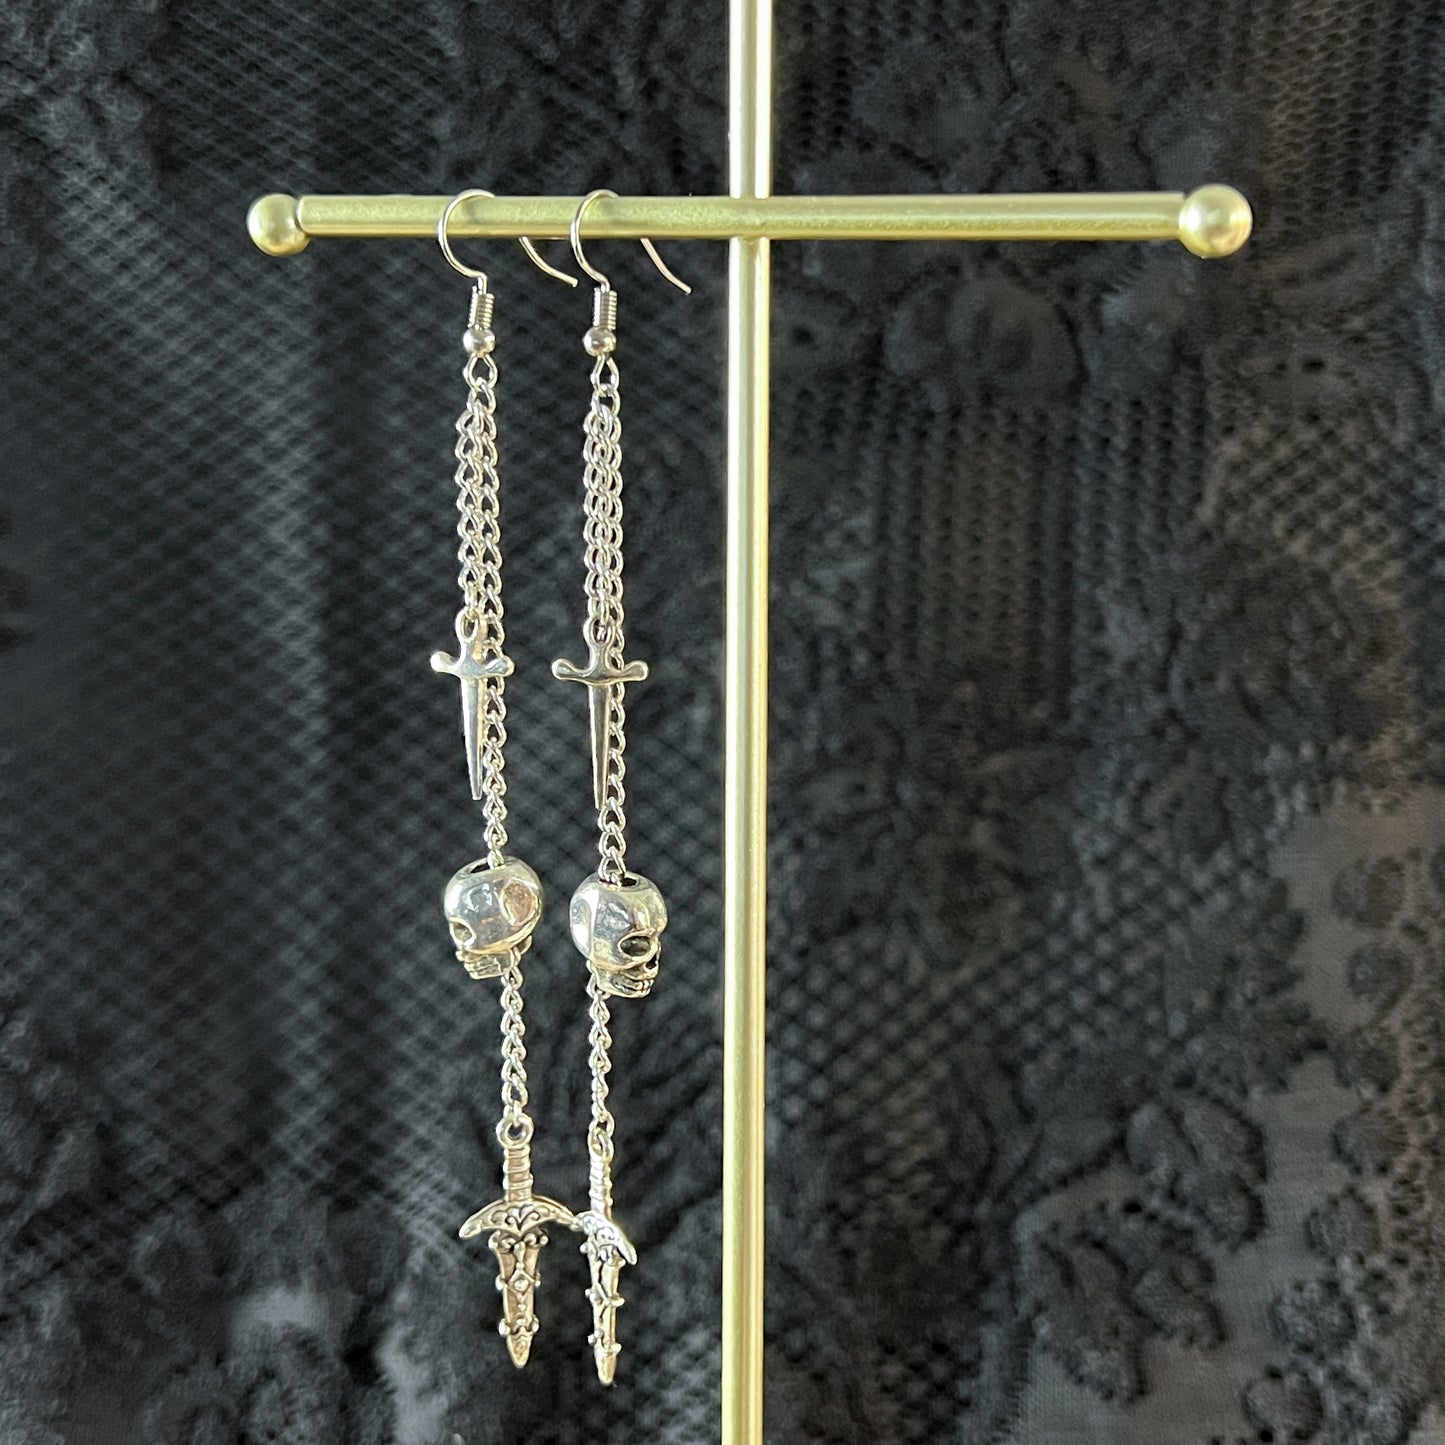 Skull and dagger earrings, gothic jewelry, alternative long earrings Halloween jewelry